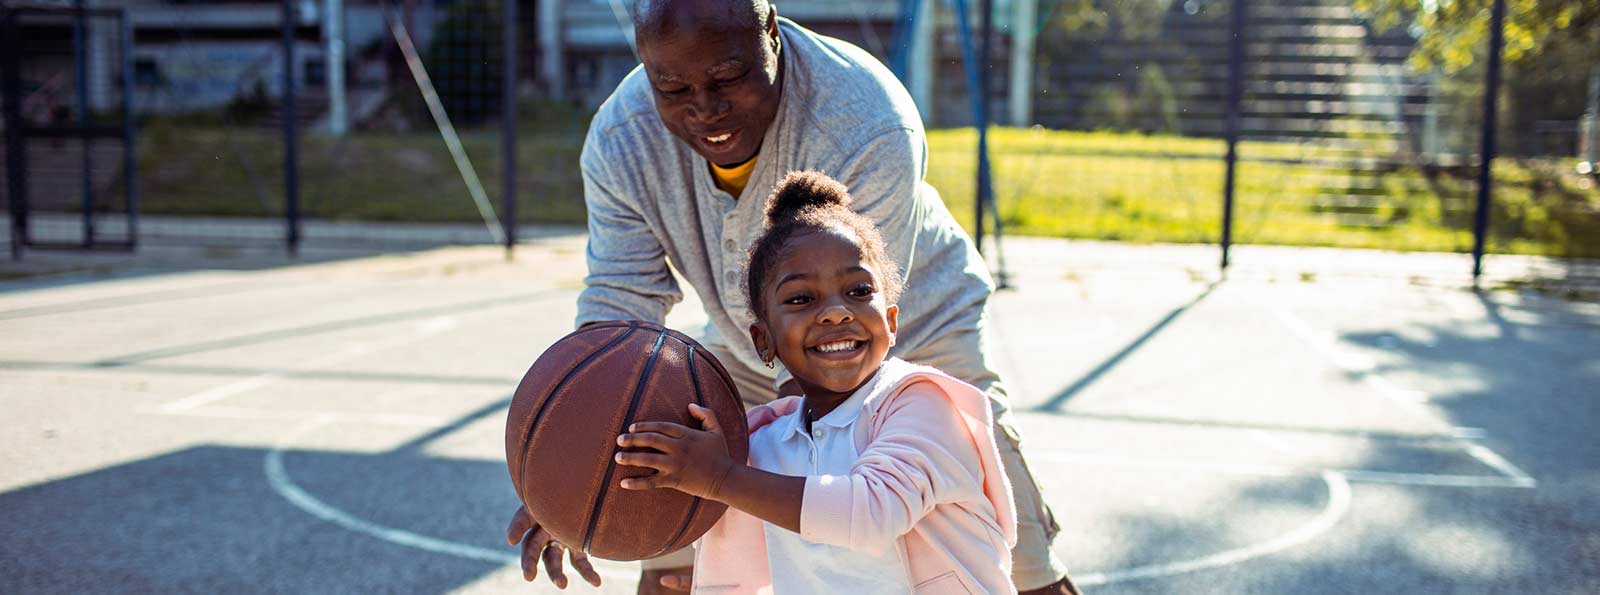 Girl and her grandpa playing basketball.